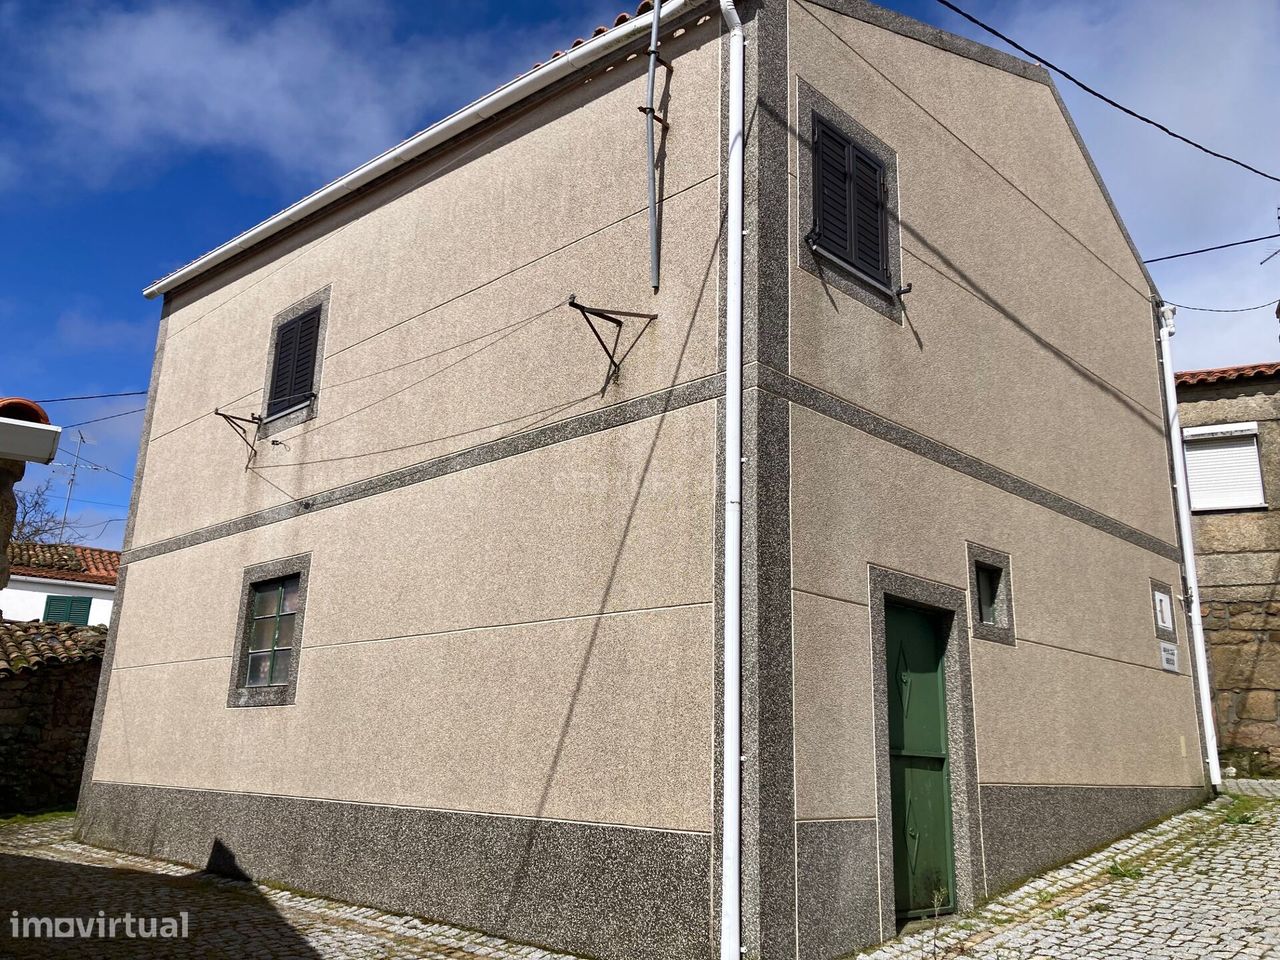 Moradia Isolada T2 em Pinzio - Pinhel - (Guarda) com garagem fechada